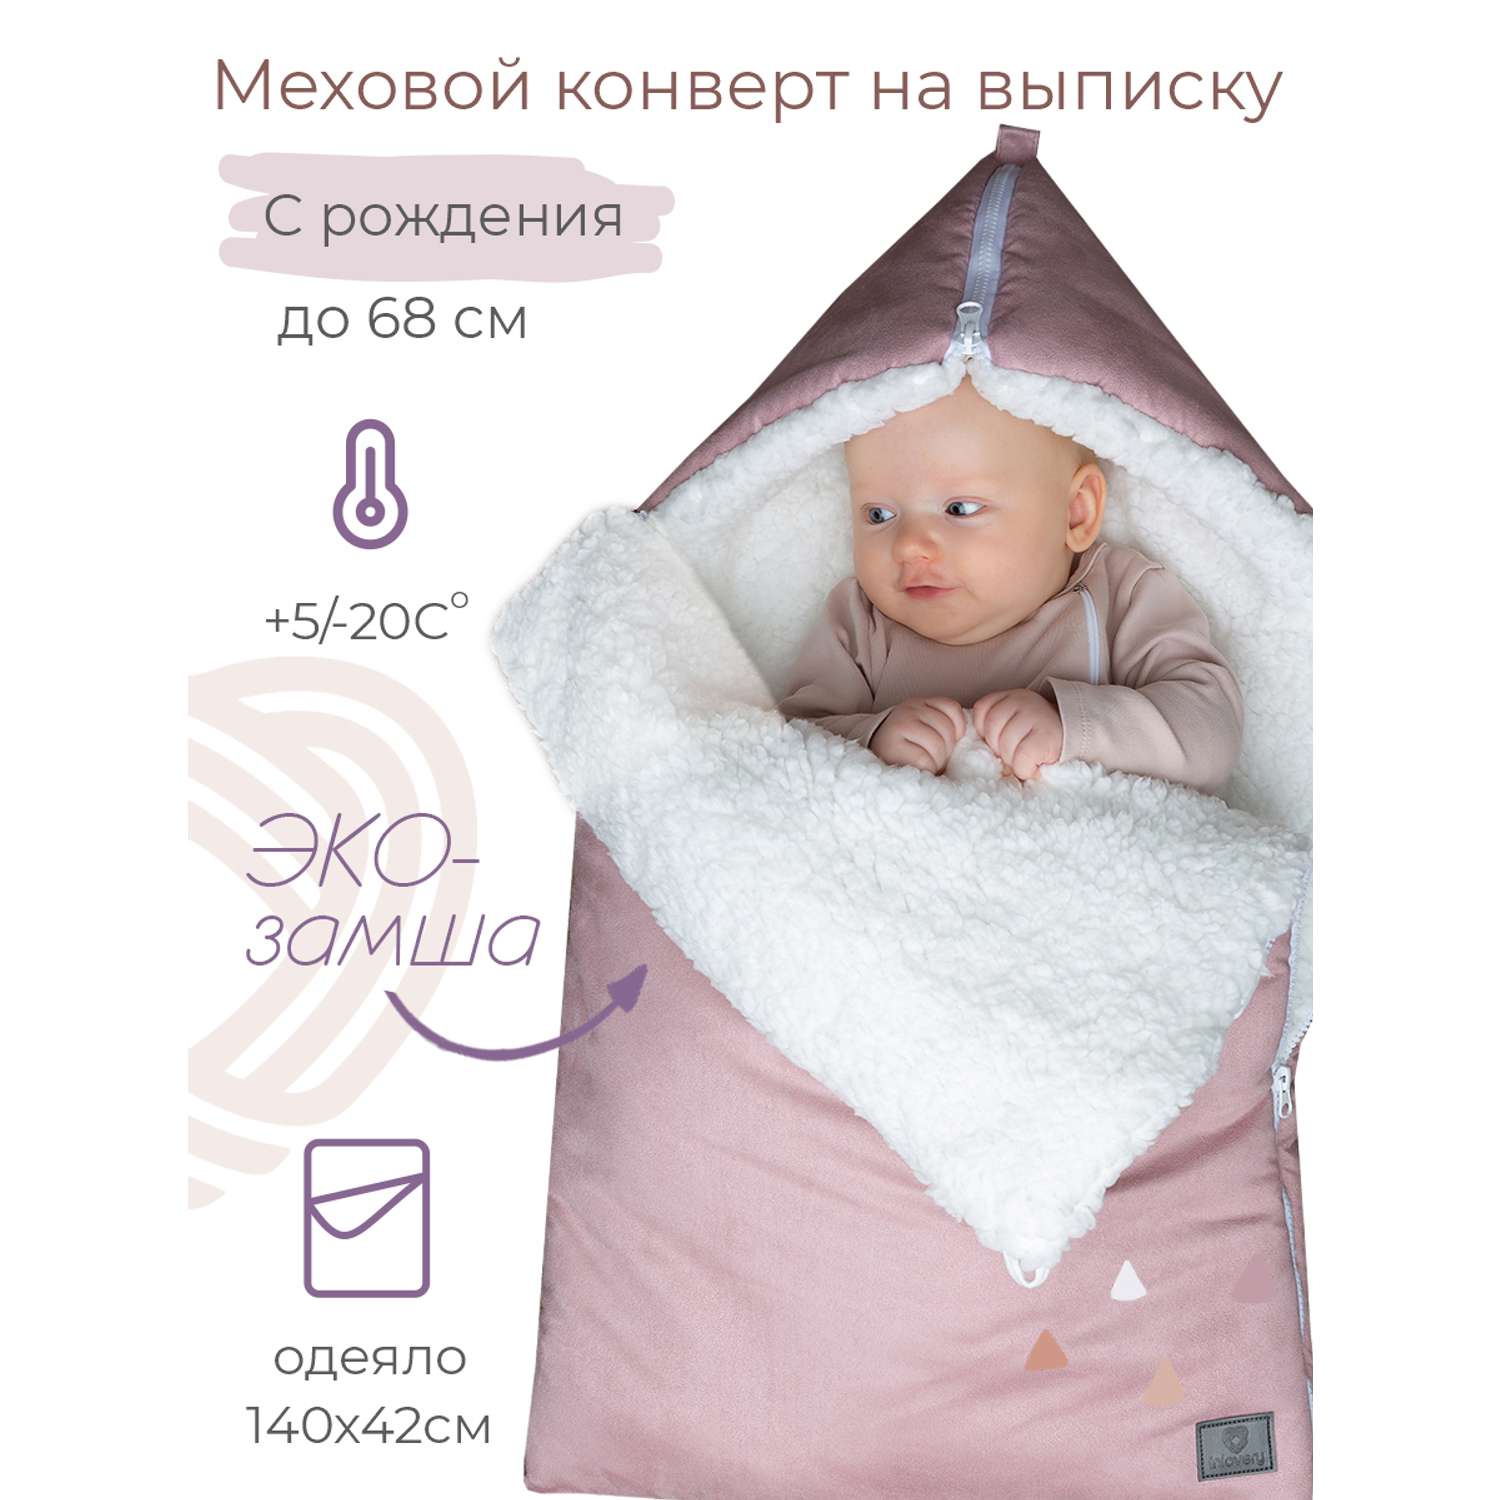 Конверт на выписку inlovery для новорожденного Нордик/пыльная роза - фото 1